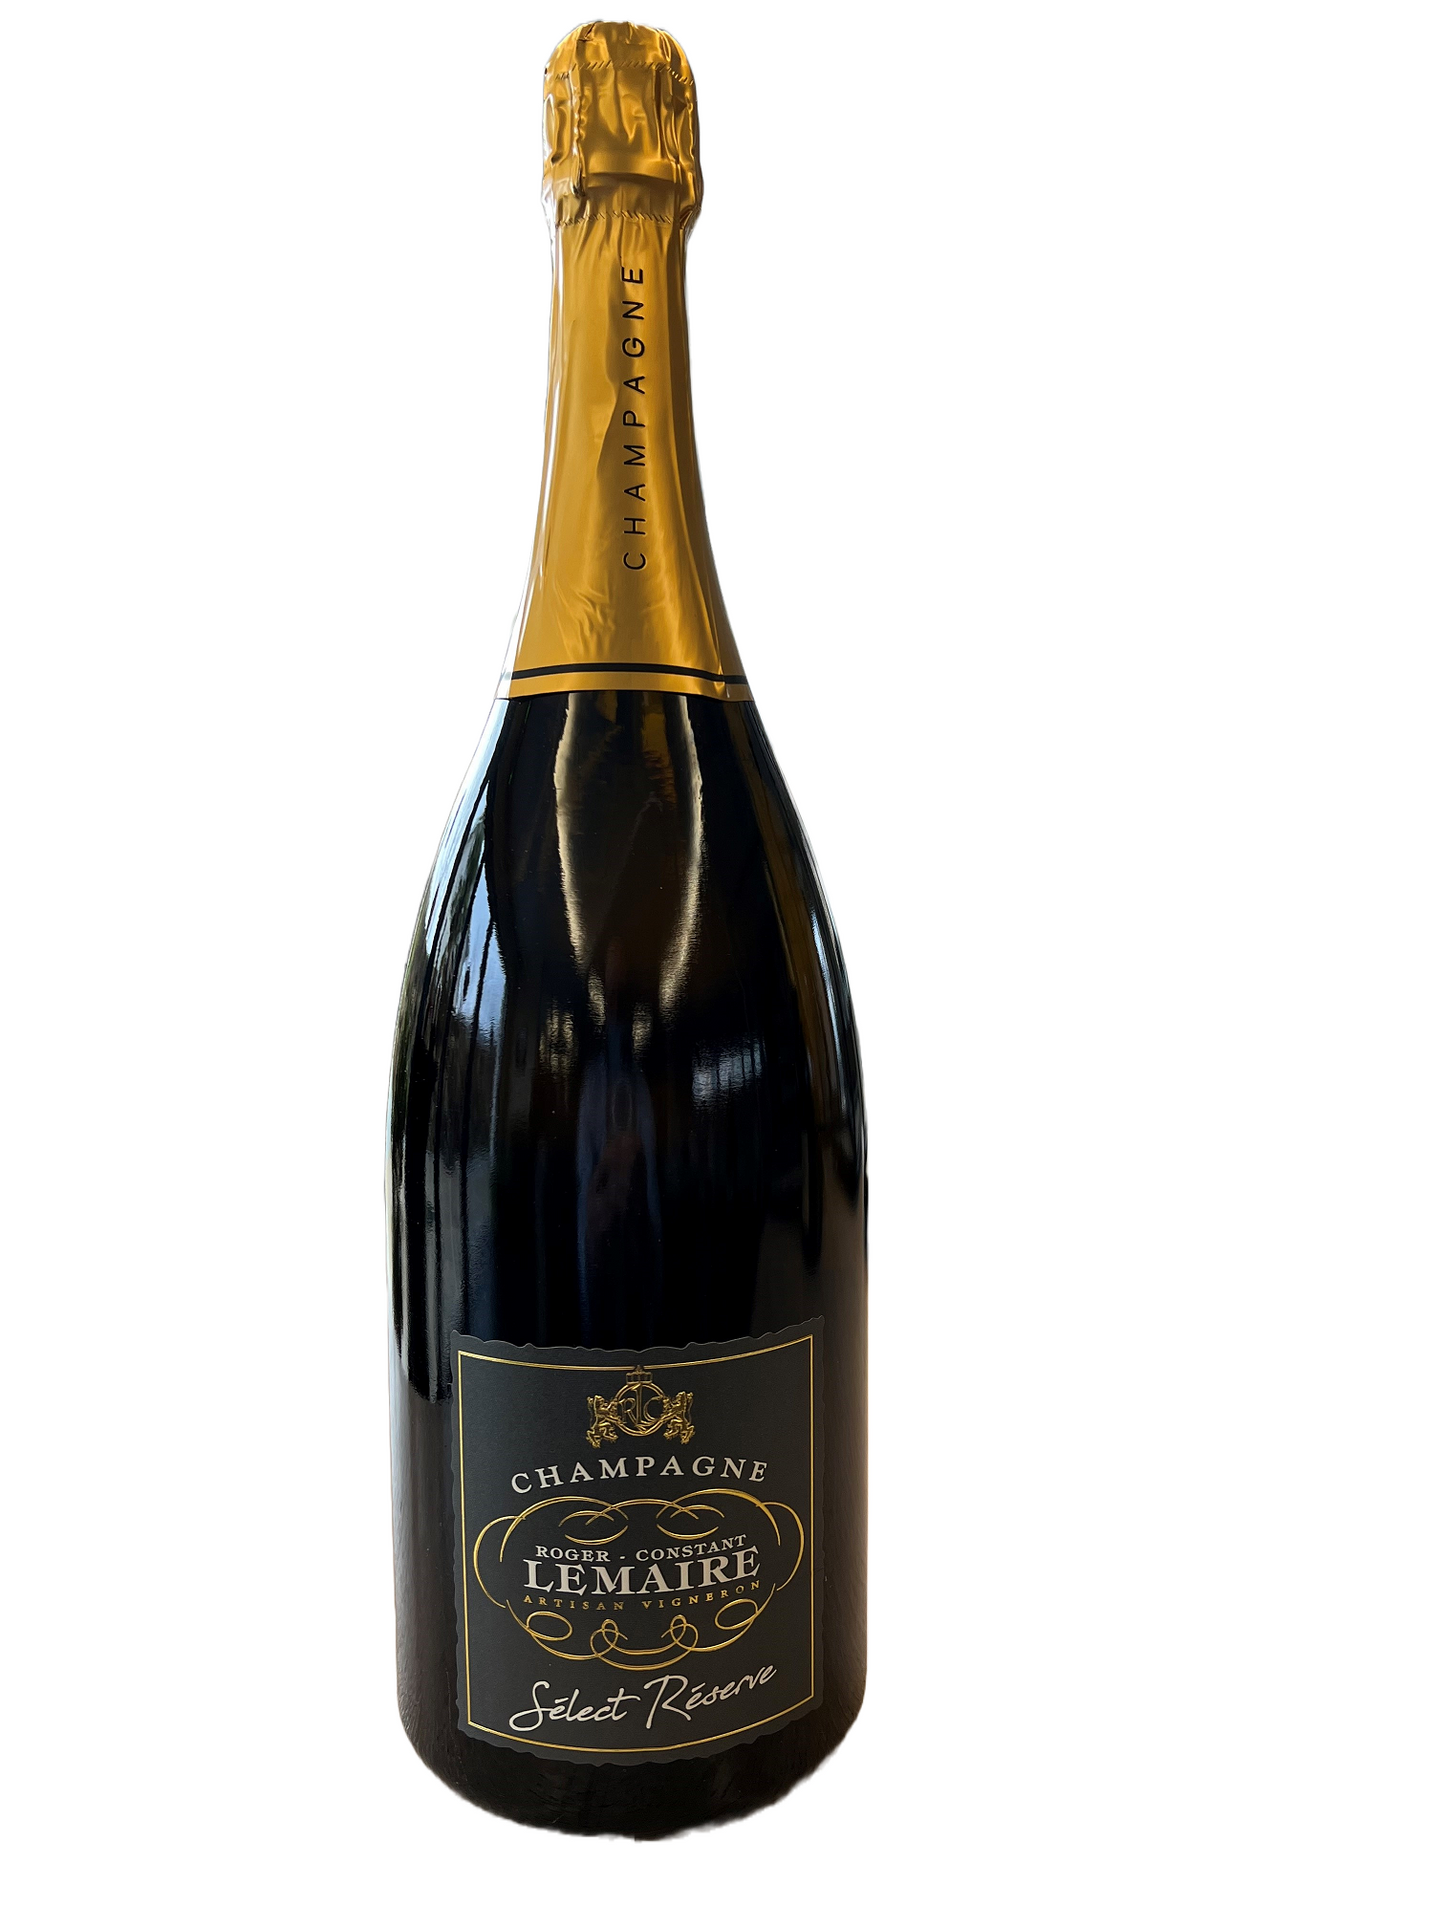 Champagne Roger Constant Lemaire - Select Réserve 1.5 Litre